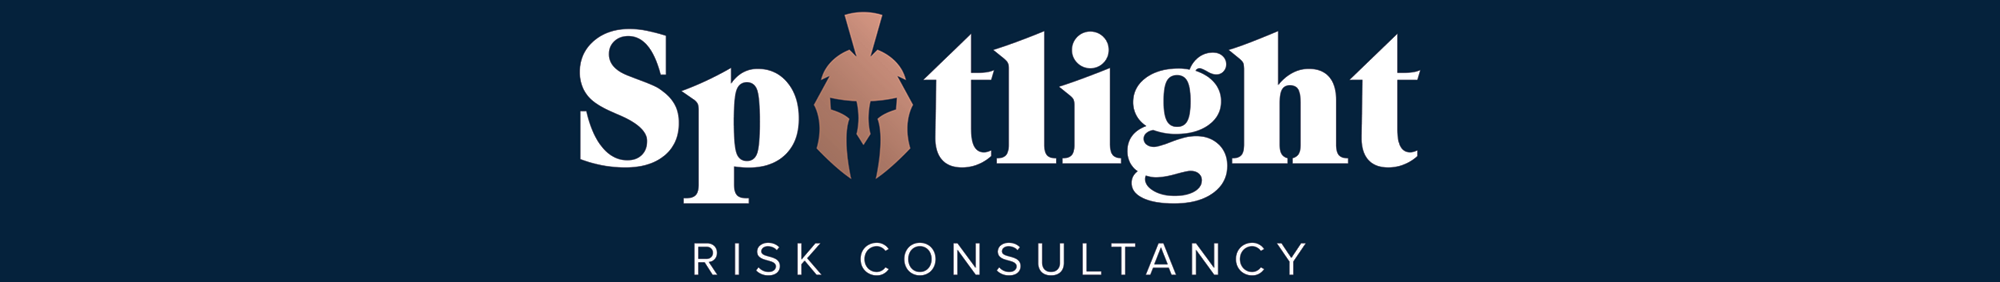 Spotlight Risk Consultancy